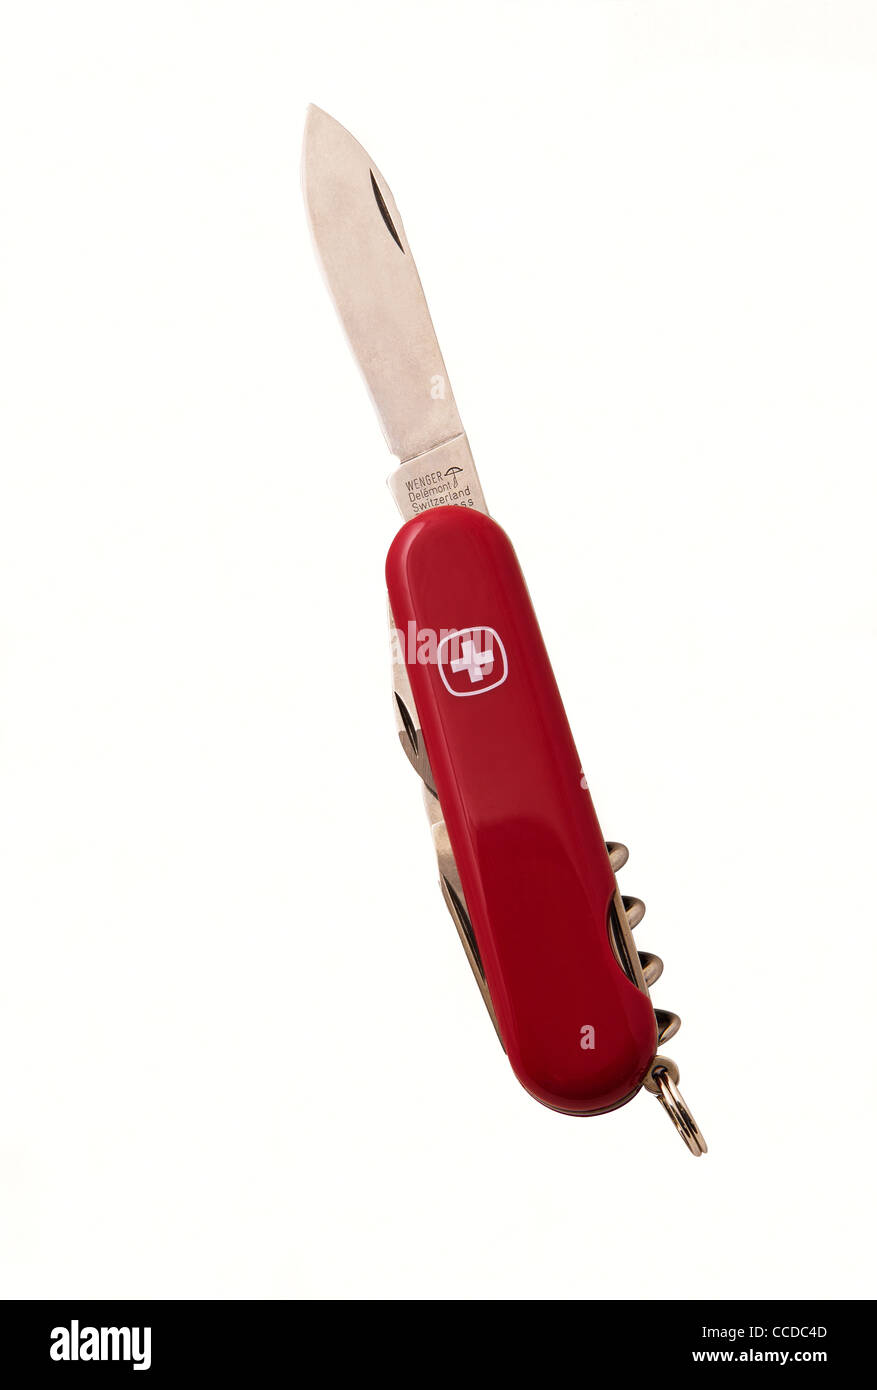 Couteau suisse faite par Wenger. - Modèle Classic 7 Photo Stock - Alamy